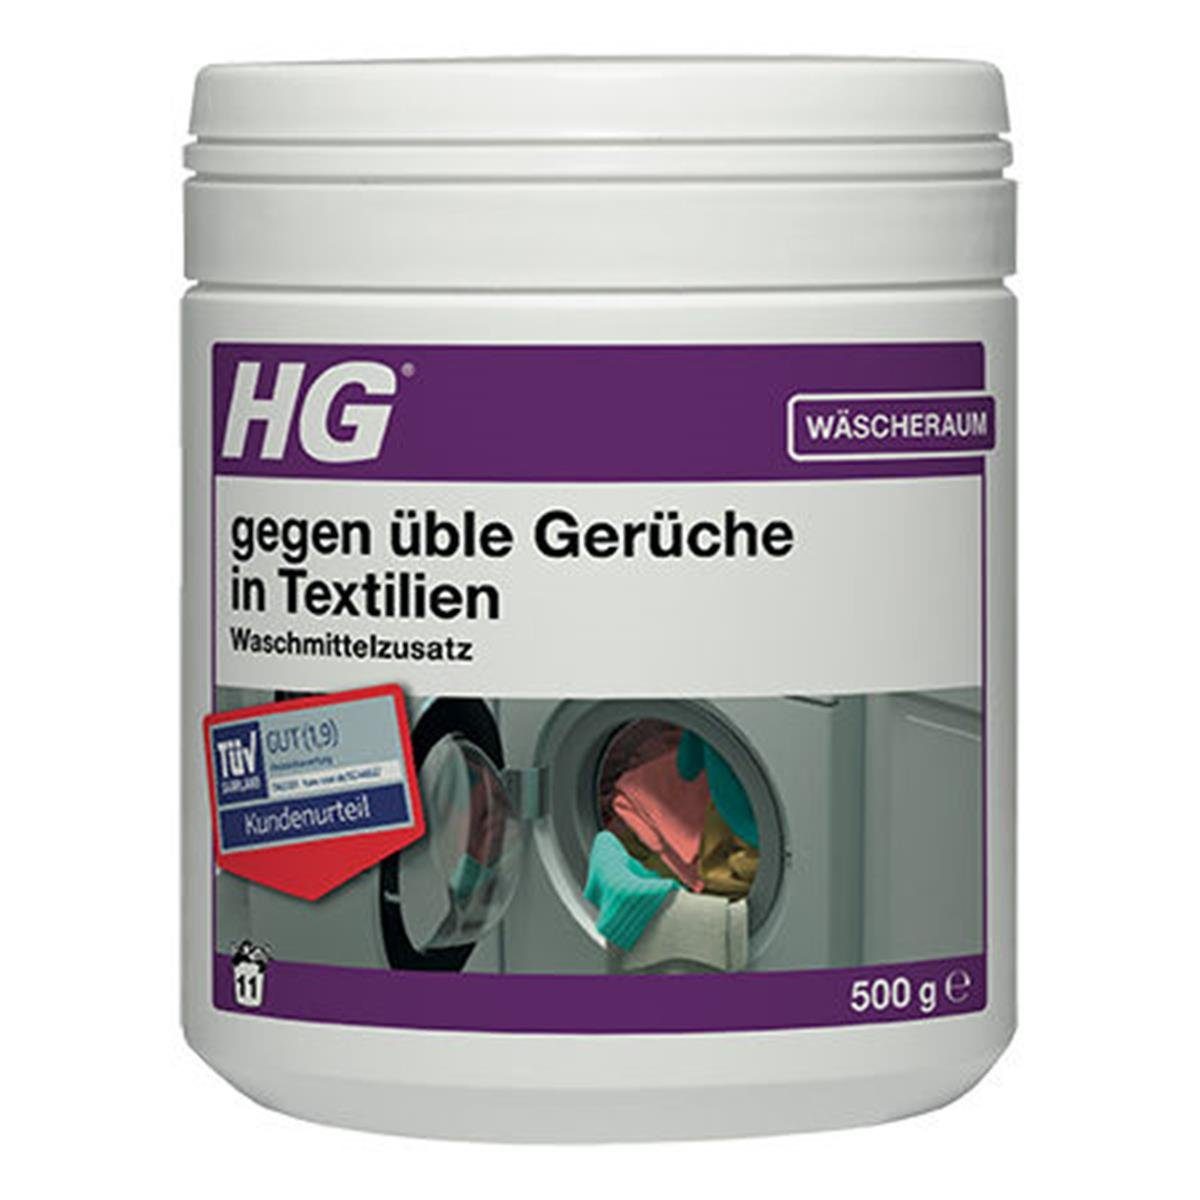 HG HG gegen üble Gerüche in Textilien Waschmittelzusatz 500g (1er Pack) Fleckentferner